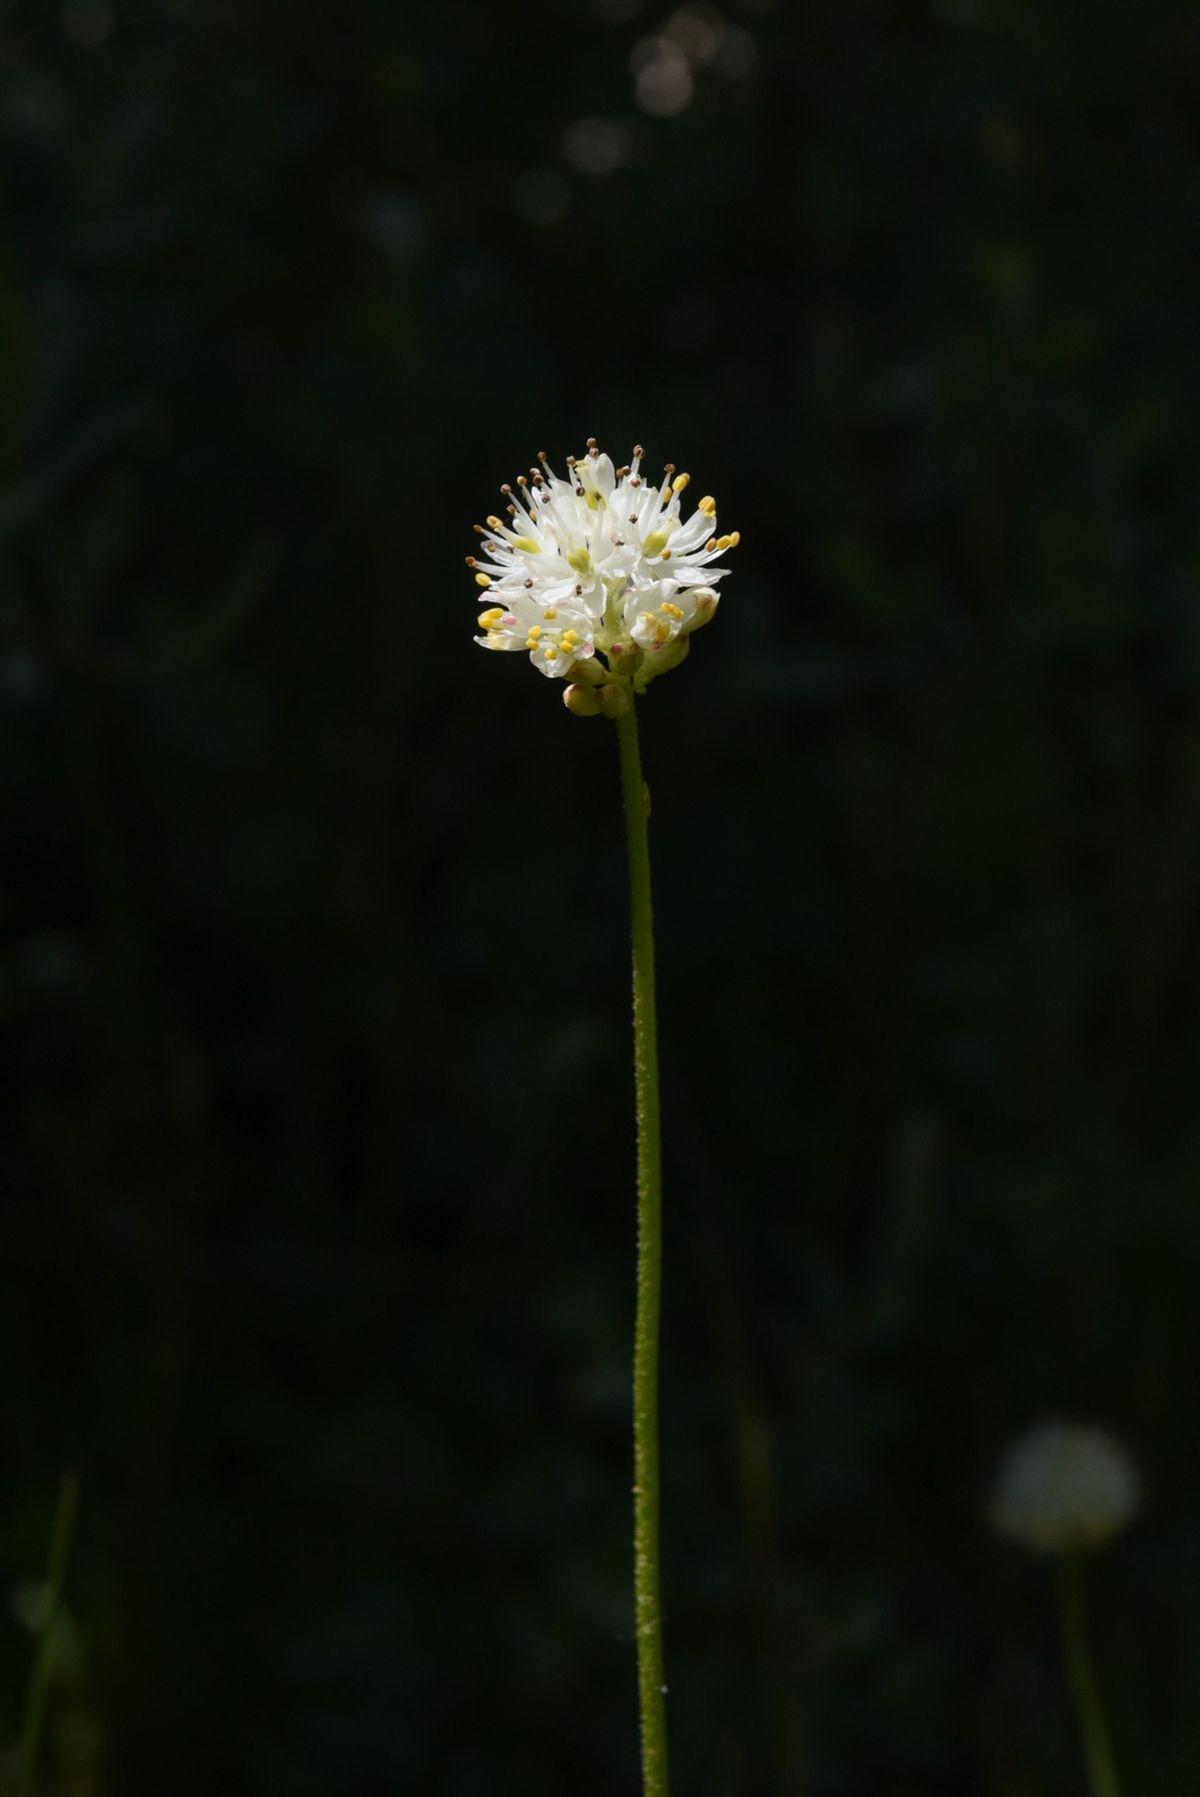 De westelijke Triantha occidentalis heeft mooie witte bloemen en haren op de stengel waarmee insecten kunnen worden gevangen en verteerd